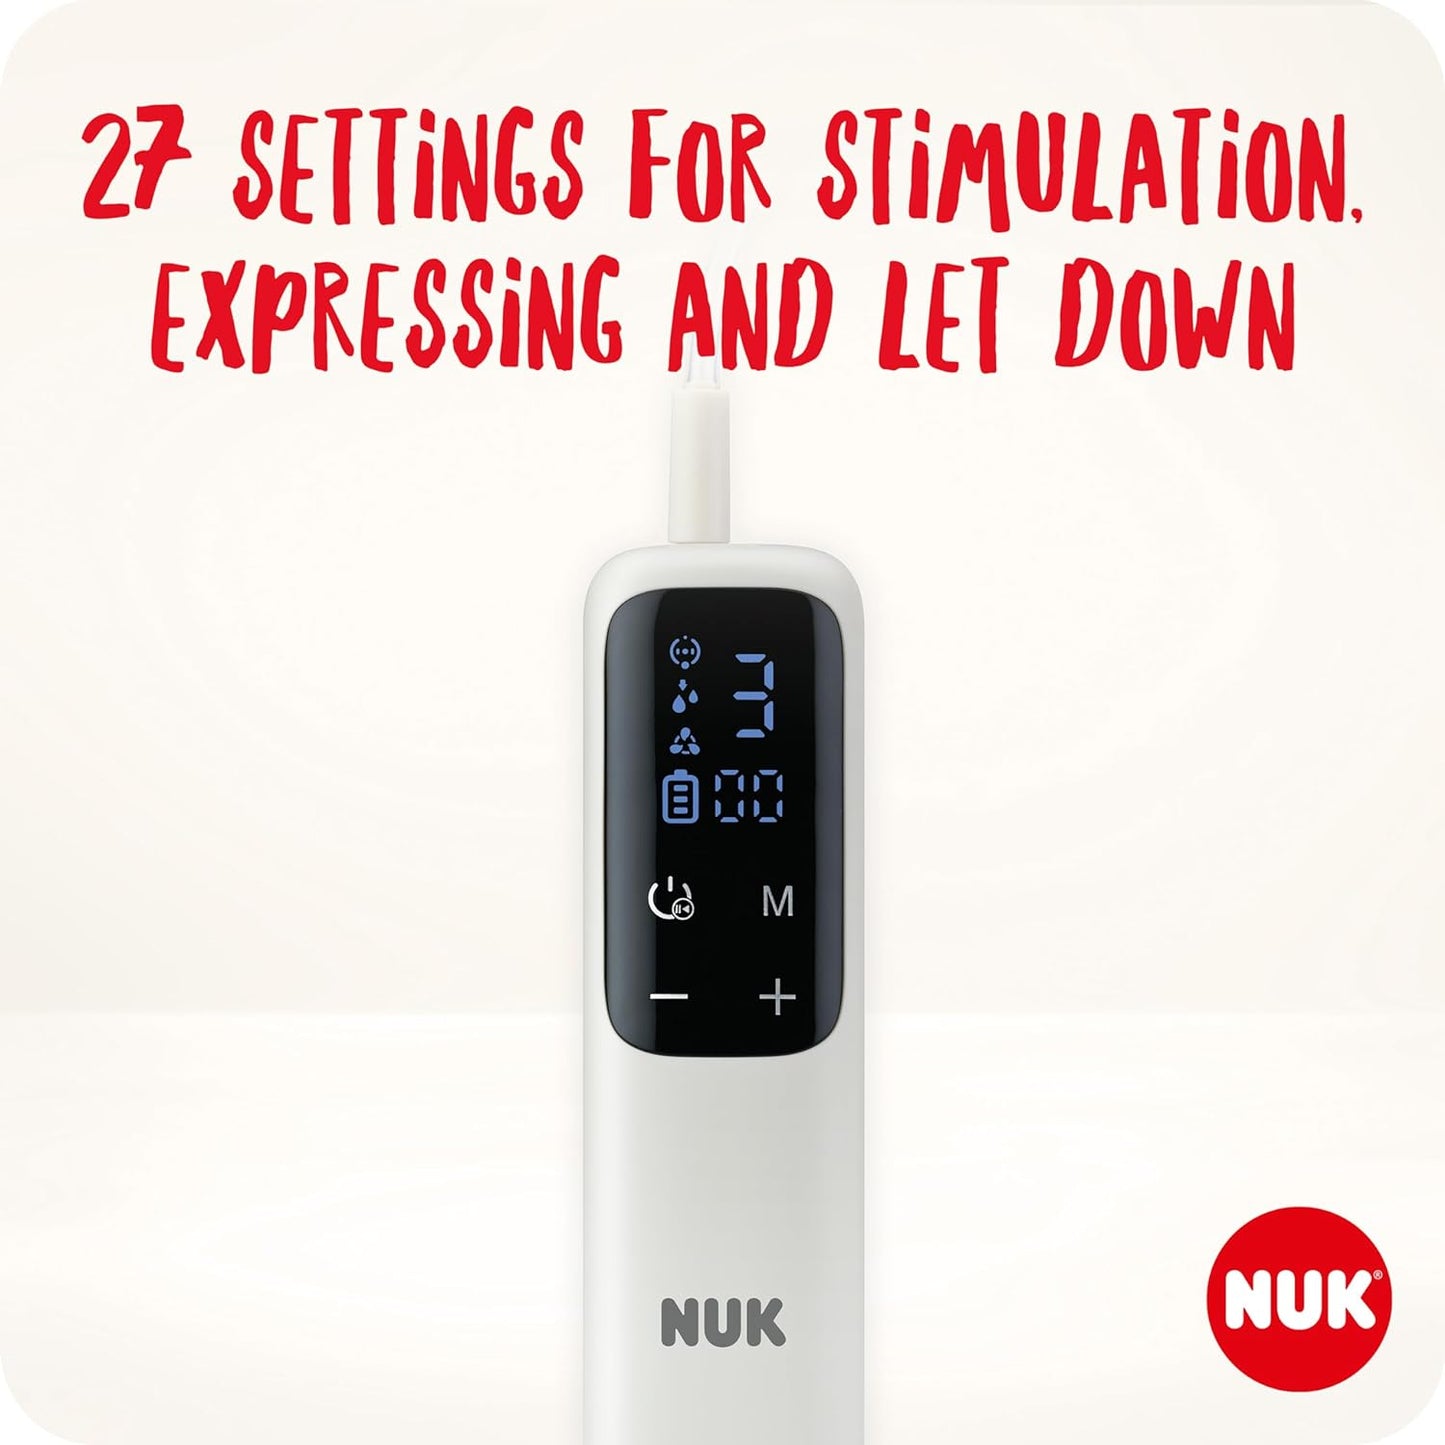 NUK Bomba tira leite elétrica dupla macia e fácil | Copos macios 100 por cento de silicone | Pequeno, leve, silencioso | Bateria recarregável para viagens | Copos de 24 mm e 27 mm | 2 x mamadeiras de combinação ideal